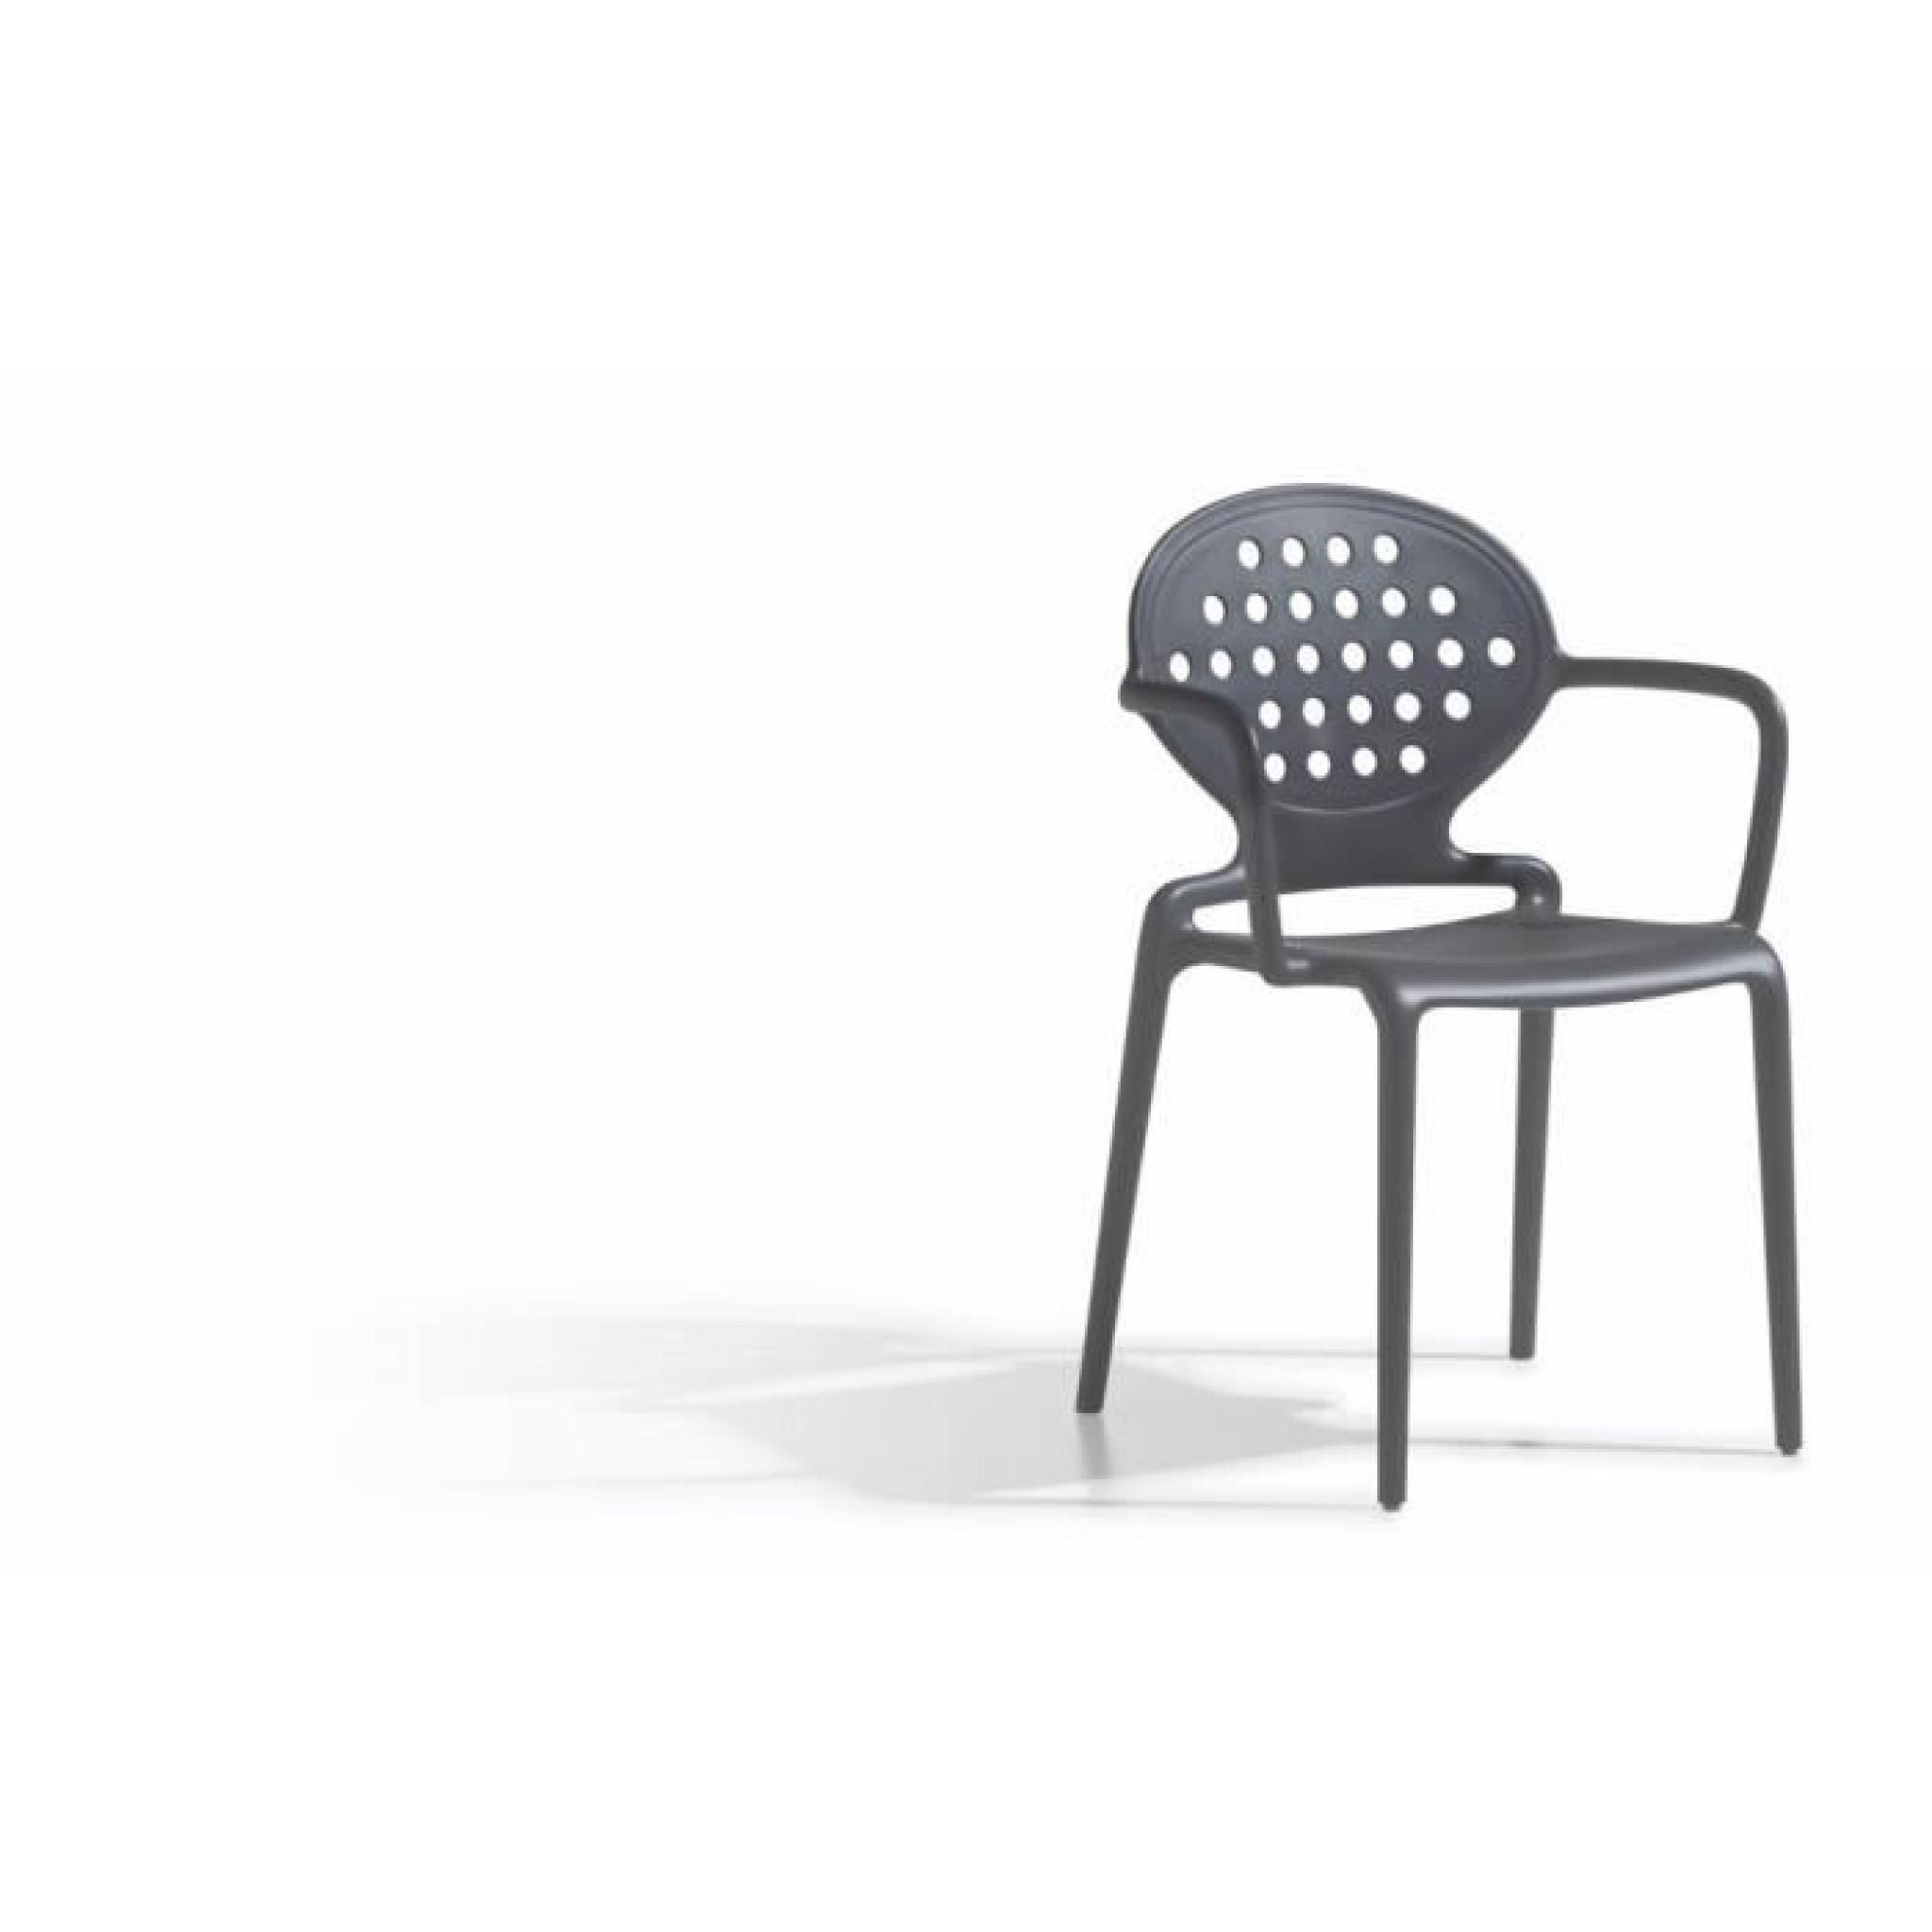 4 Chaises design avec accoudoirs - COLETTE armrests - Lot de 4 - extérieur et interieur